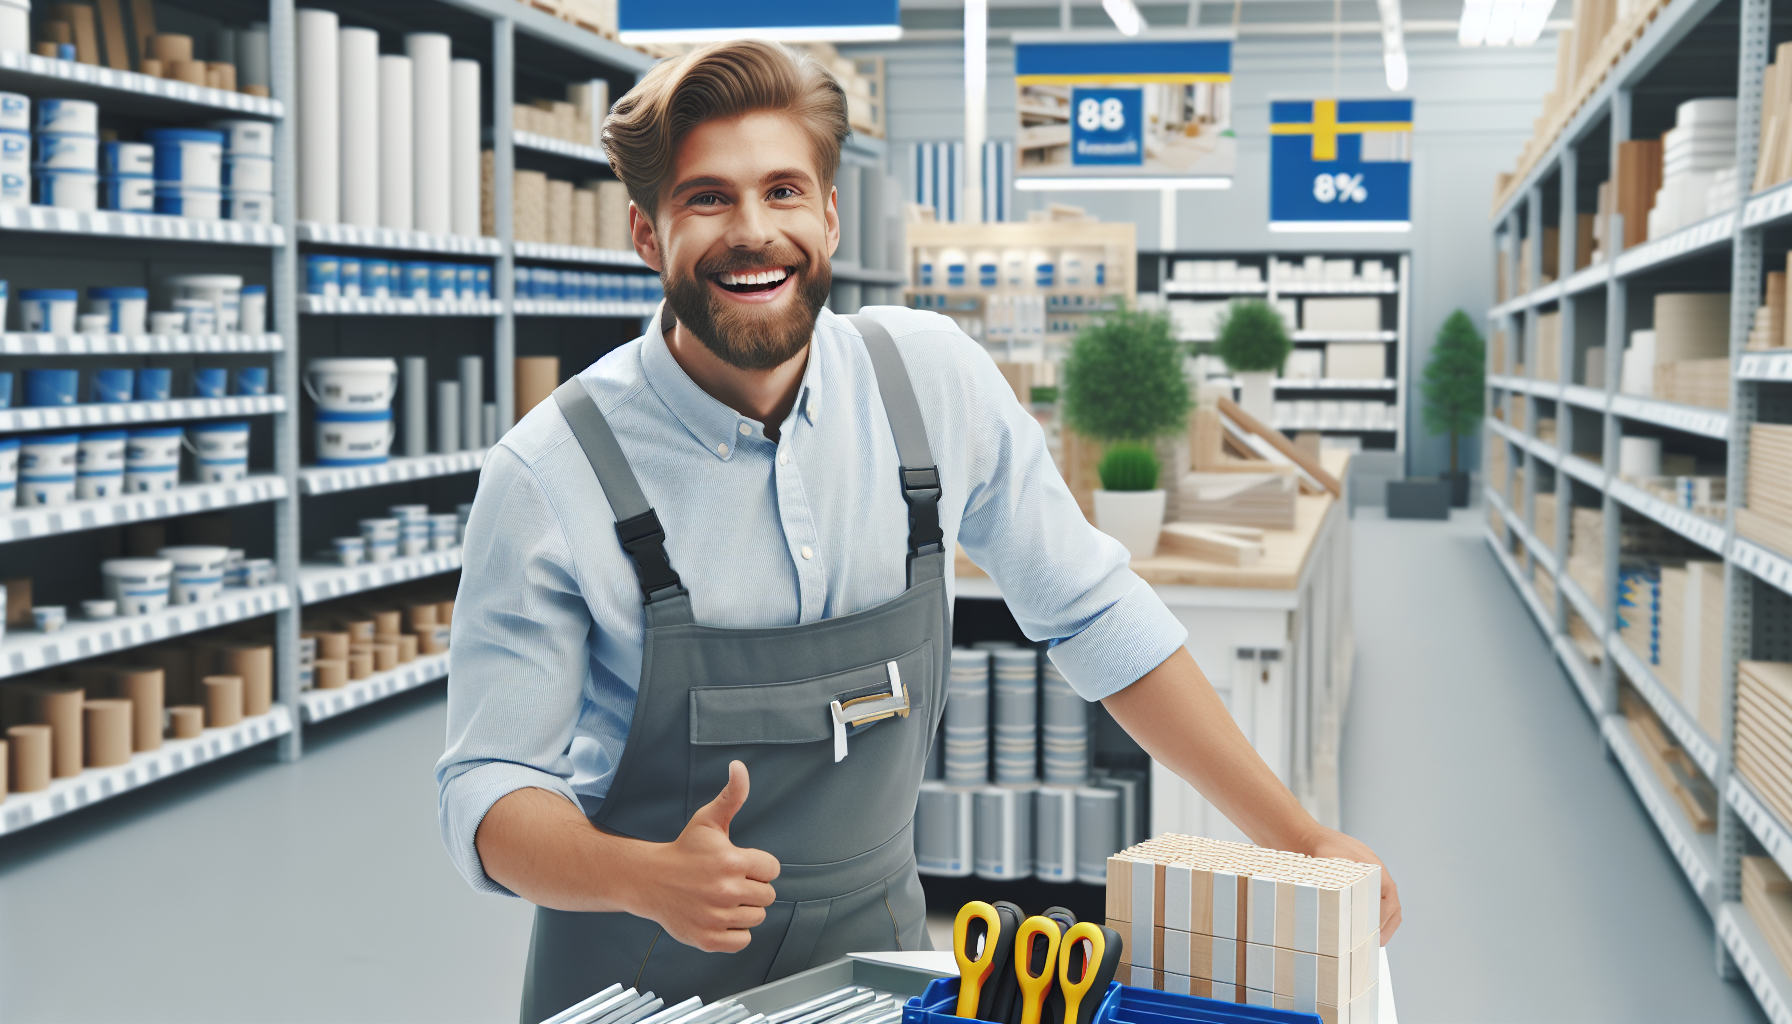 Image that illustrates Salesman, shop assistant, building materials etc.